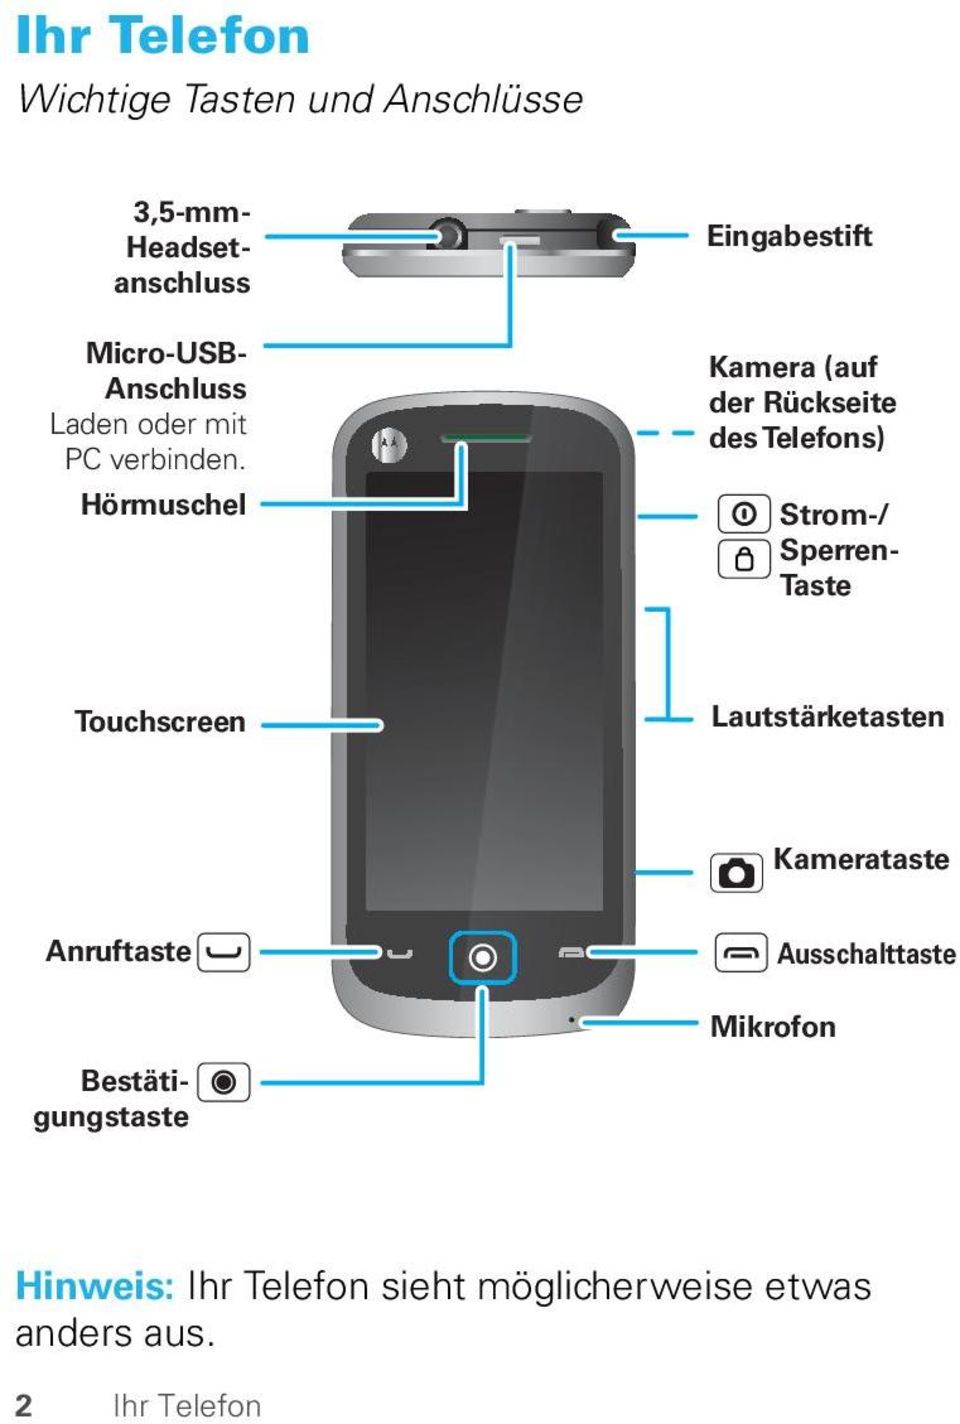 Hörmuschel Eingabestift Kamera (auf der Rückseite des Telefons) Strom-/ Sperren- Taste